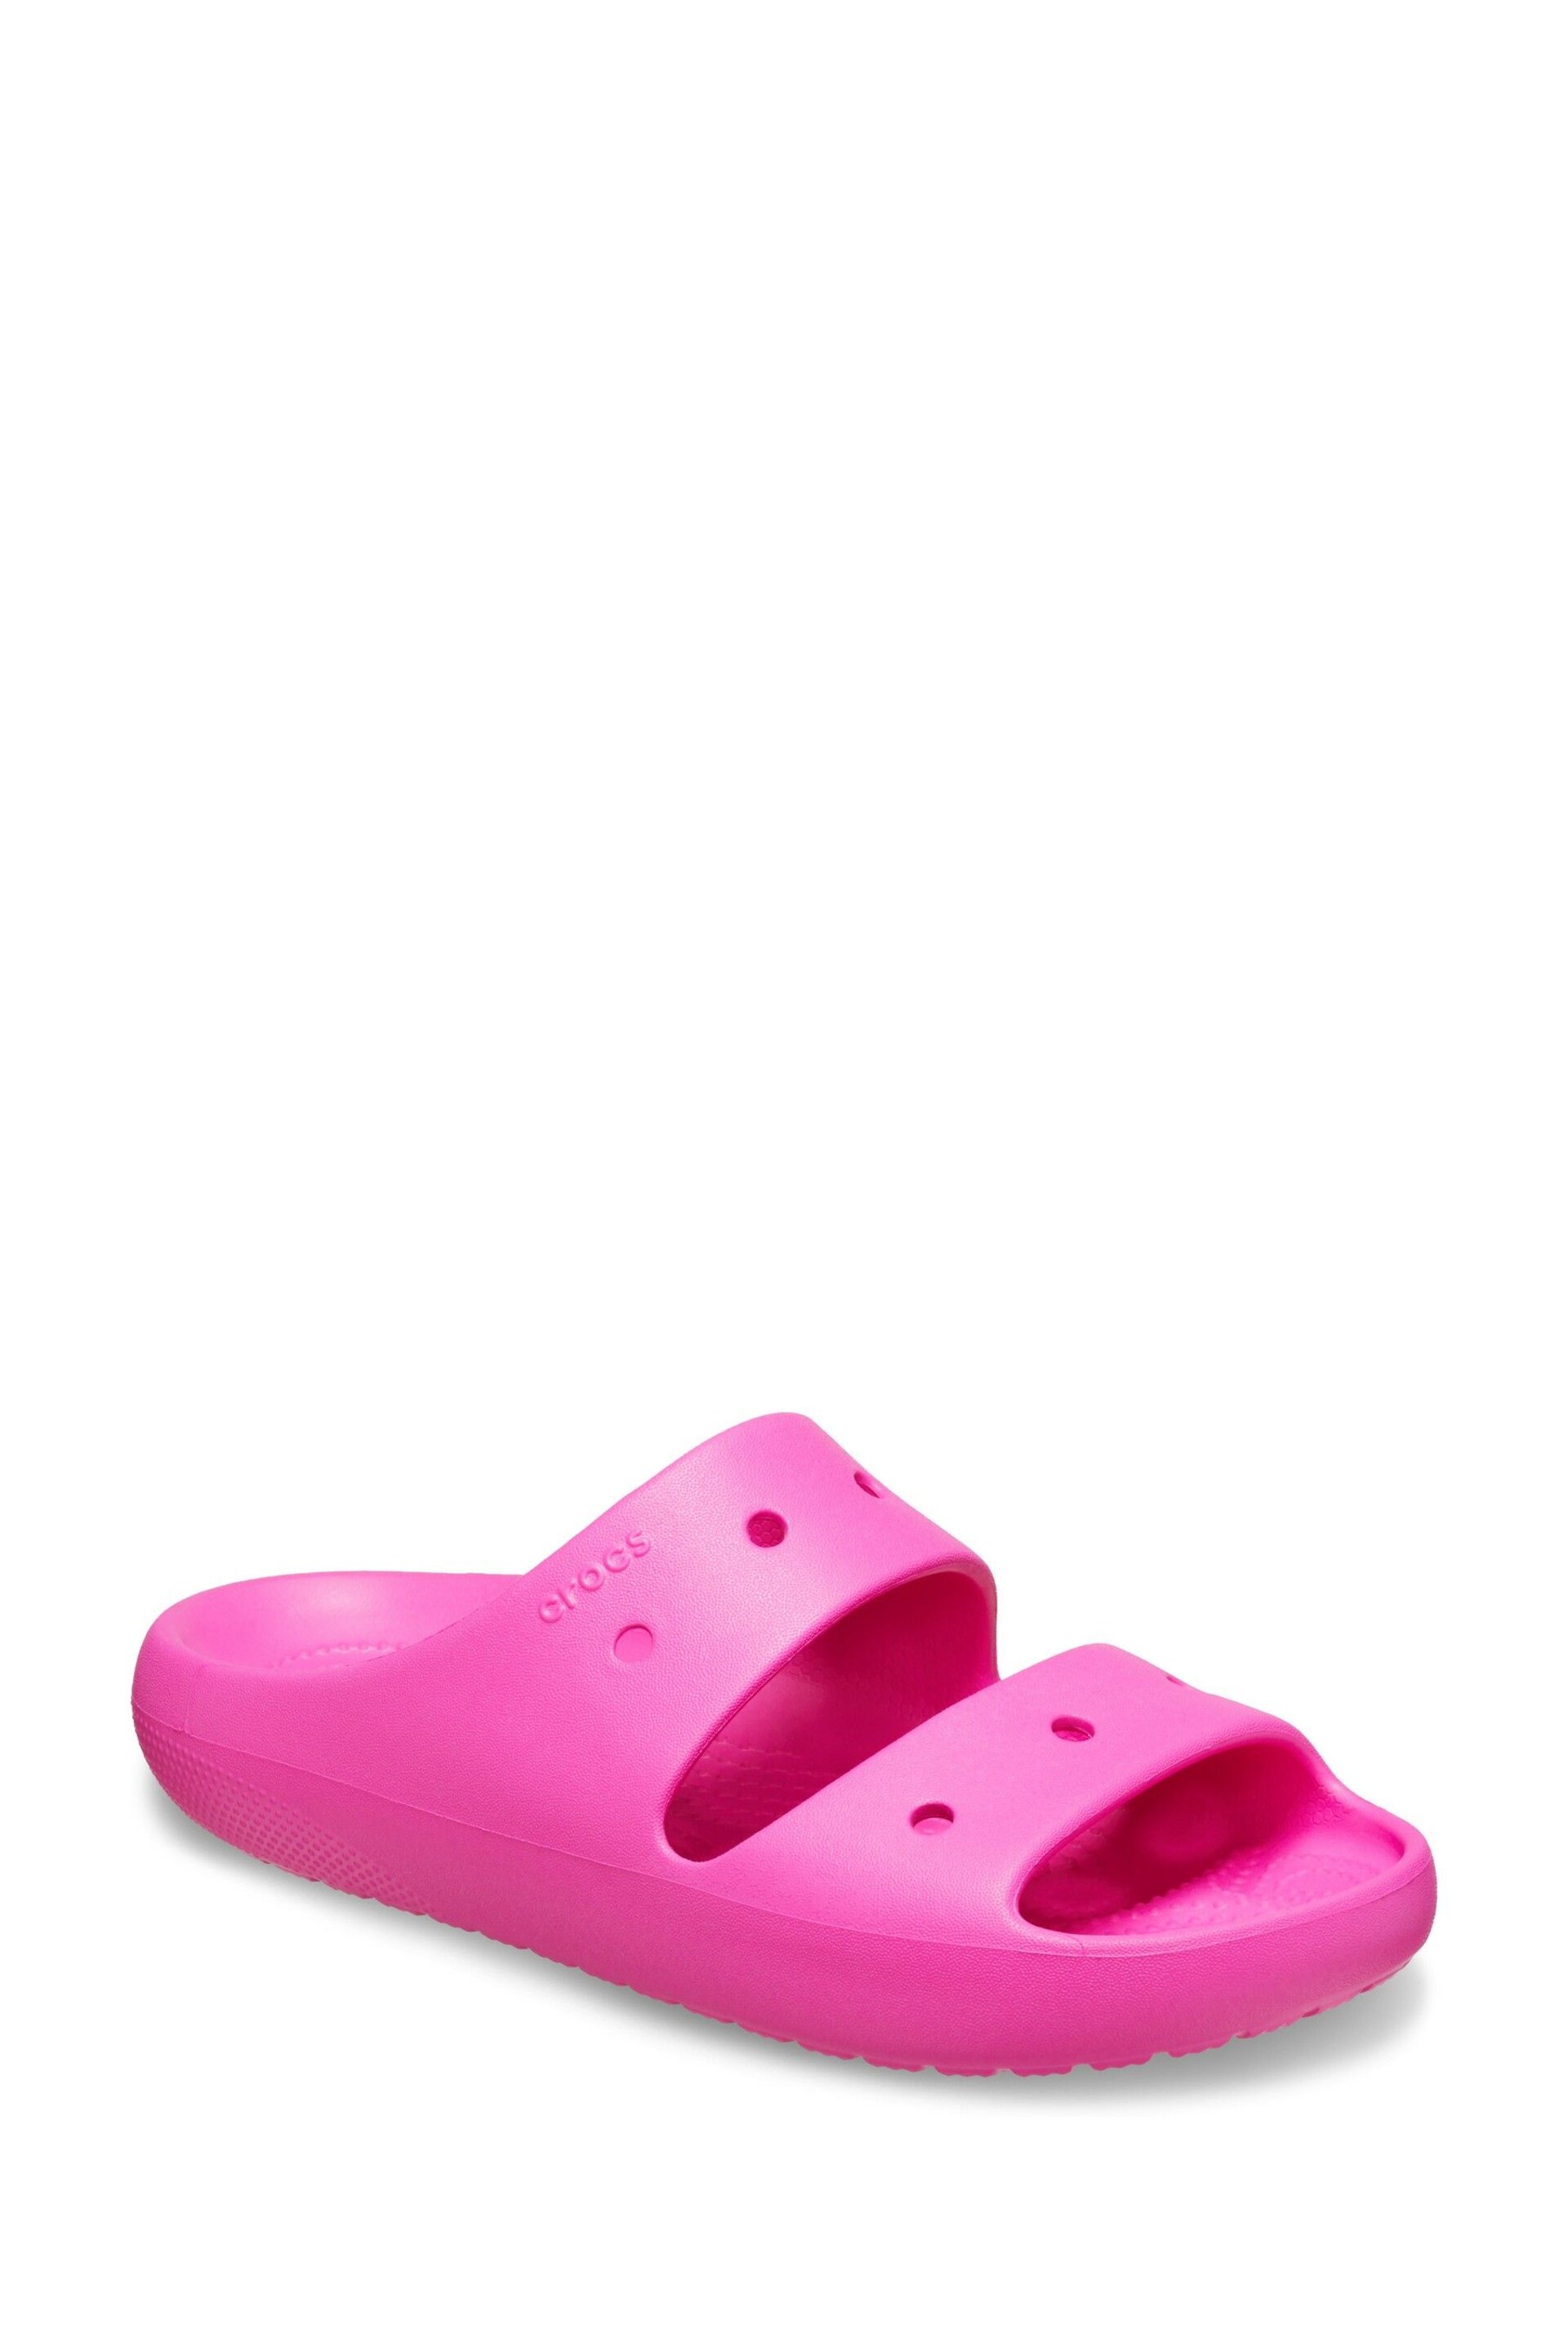 Crocs Classic Unisex Sandals - Image 2 of 6